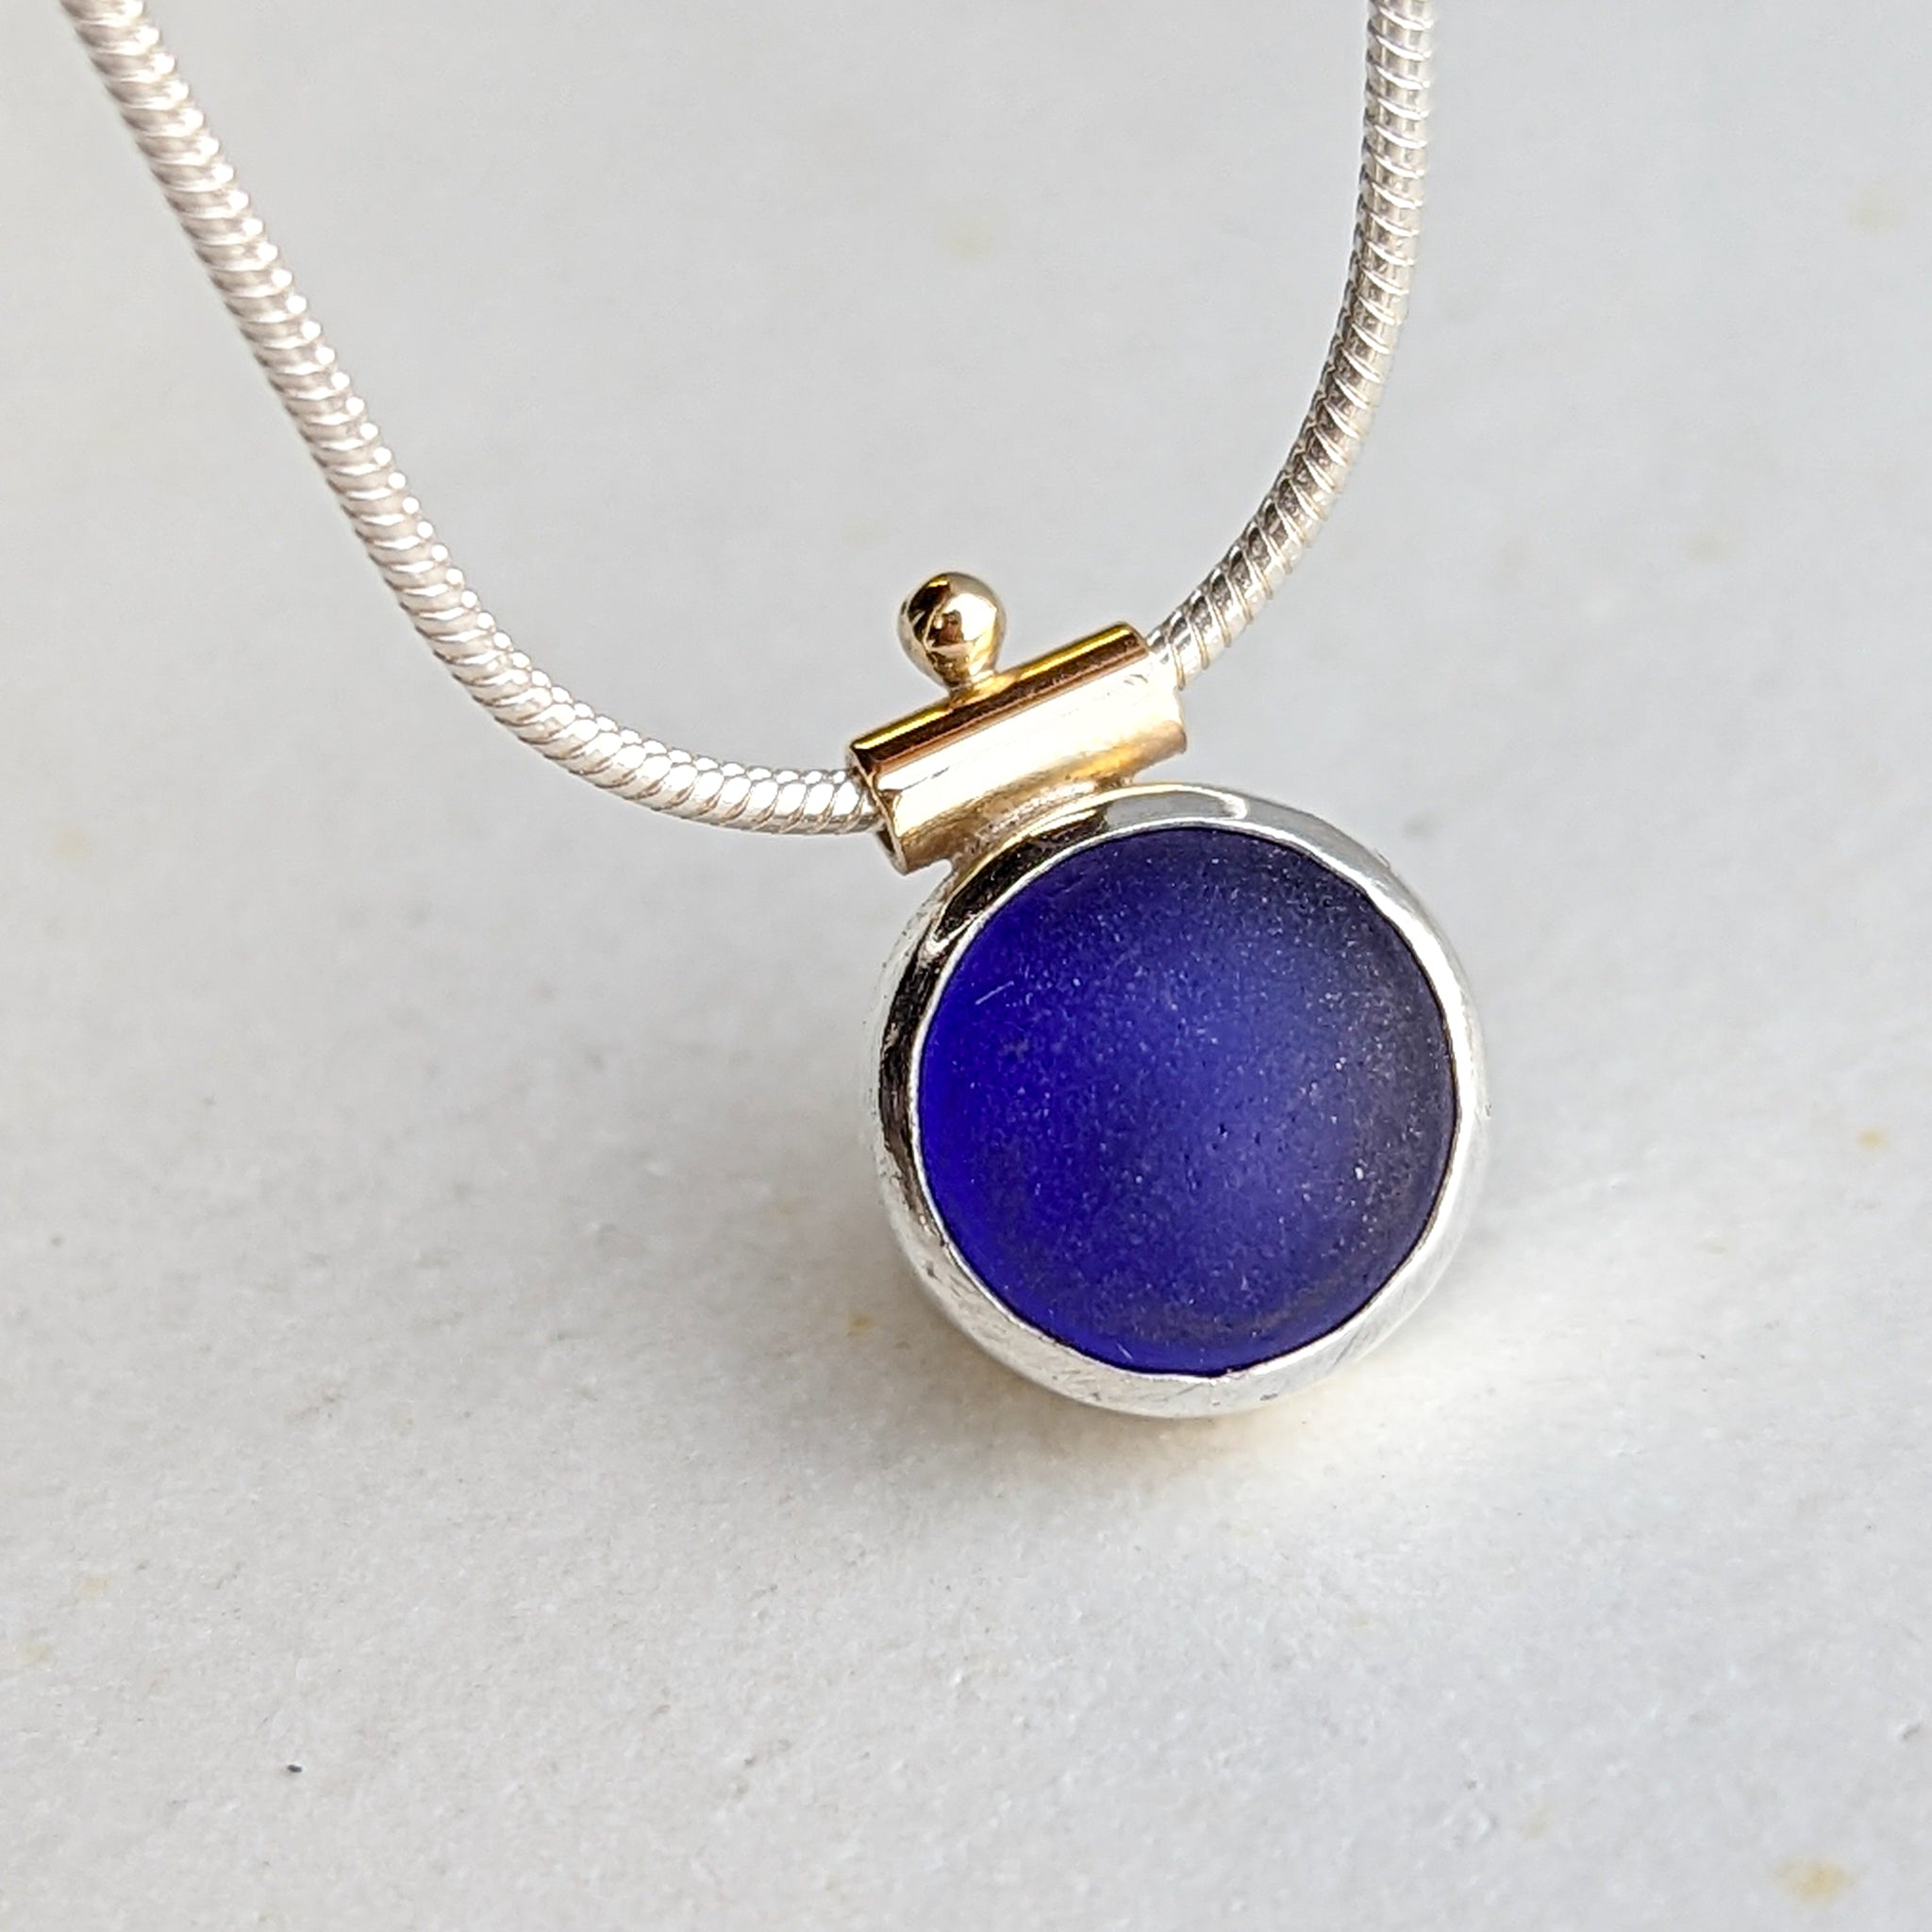 Rare, cobalt blue sea glass necklace